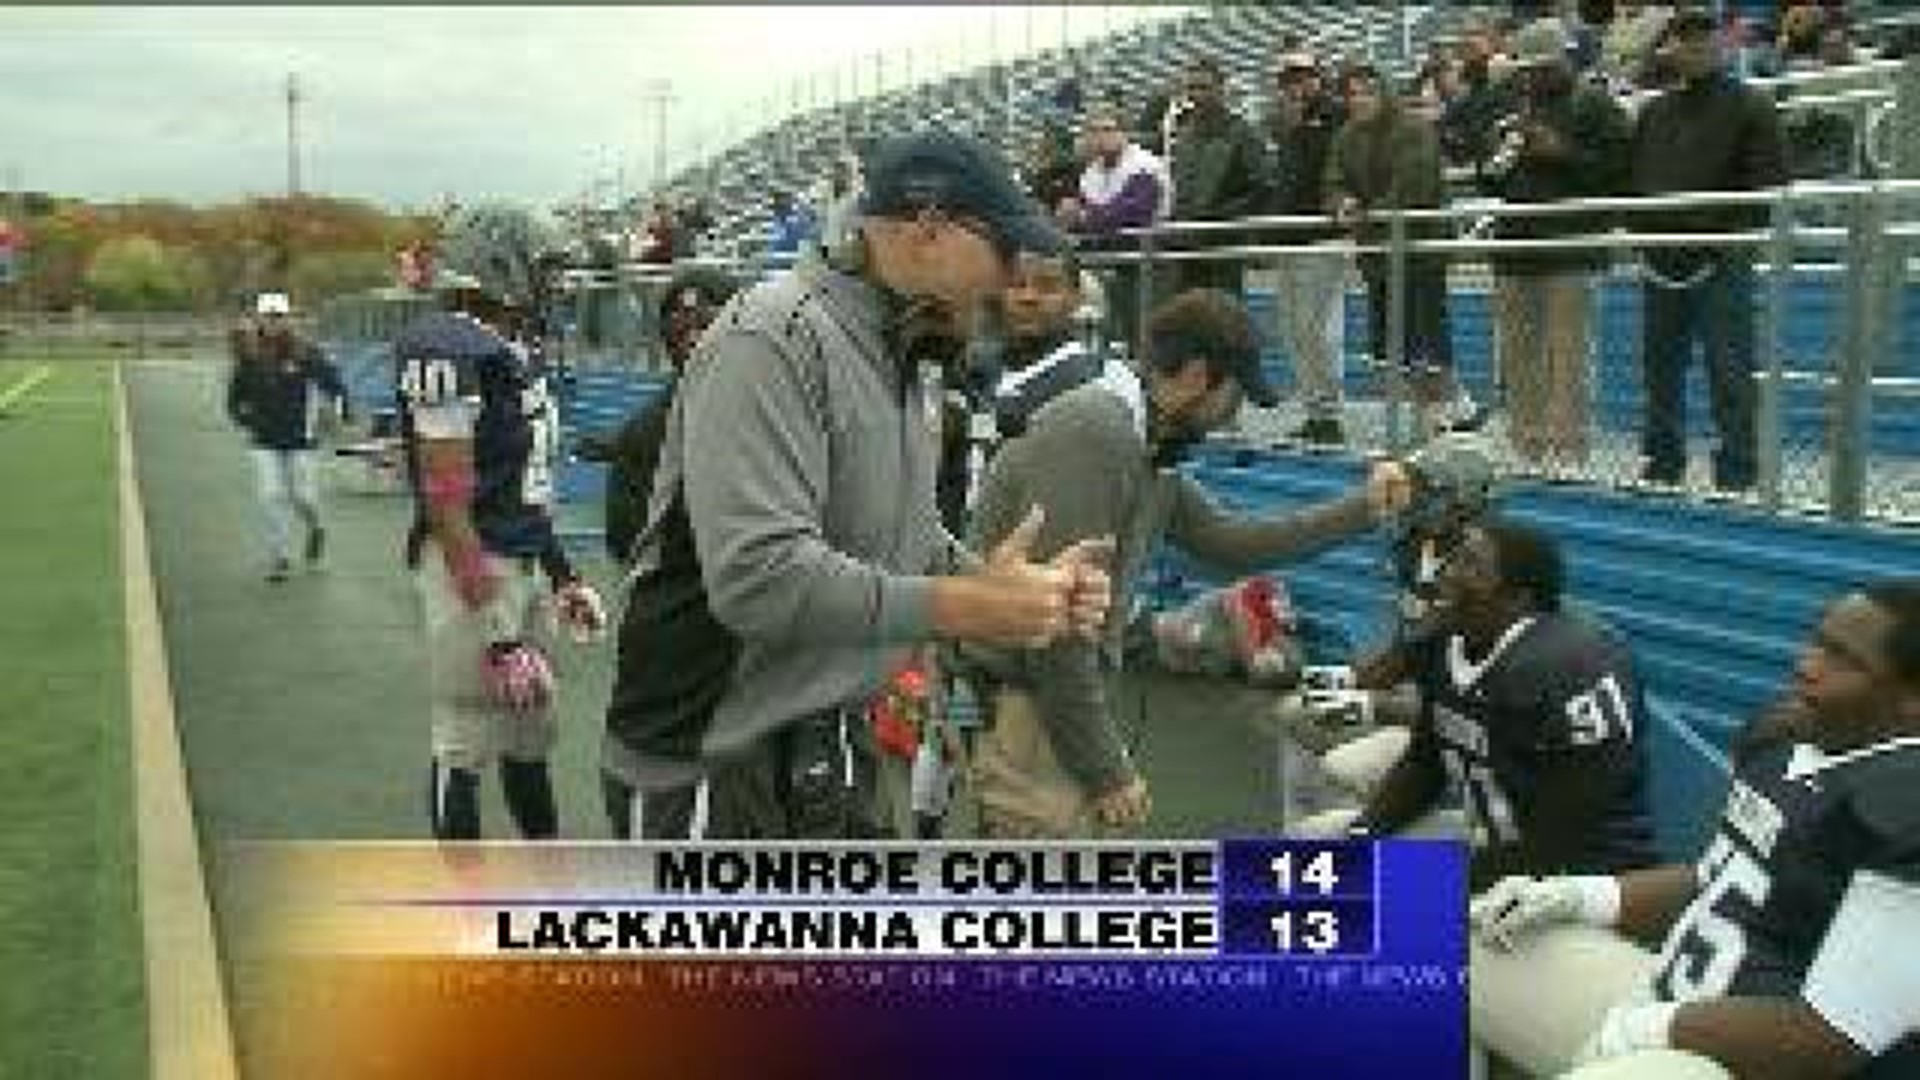 Lackawanna College vs Monroe College